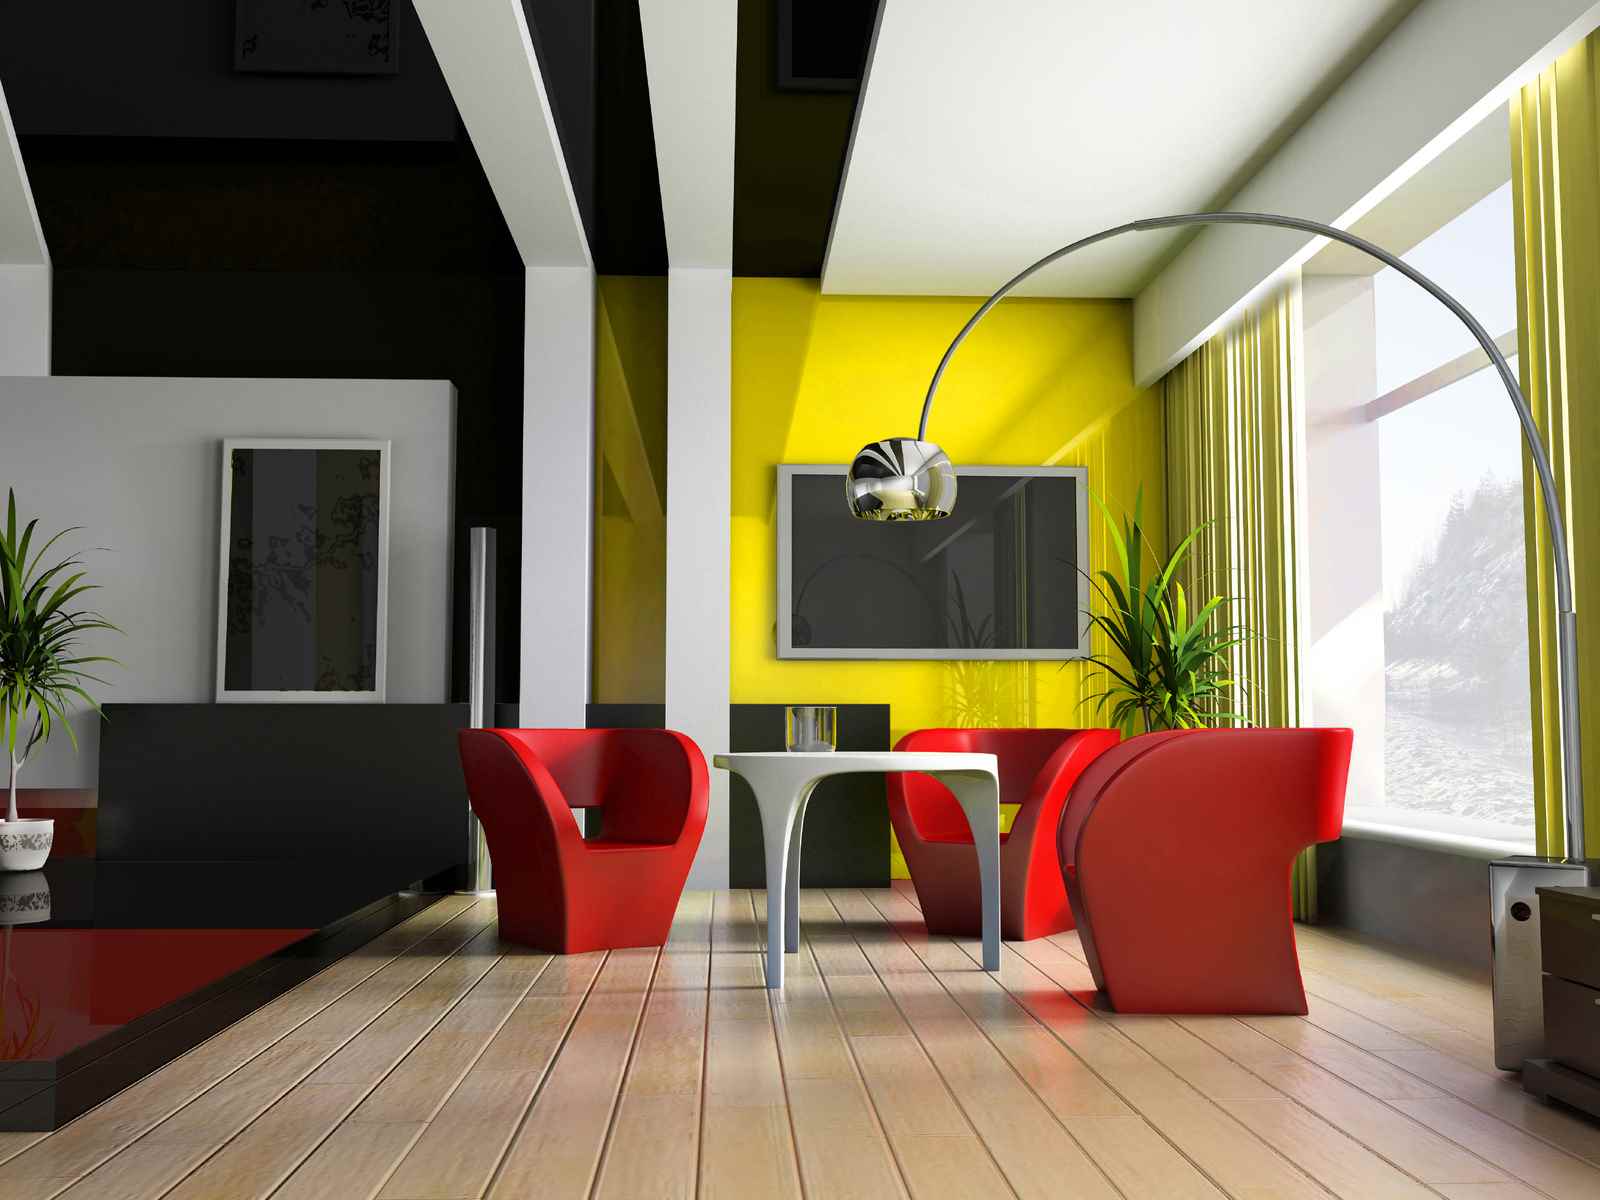 l'idea di utilizzare un insolito colore giallo all'interno dell'appartamento